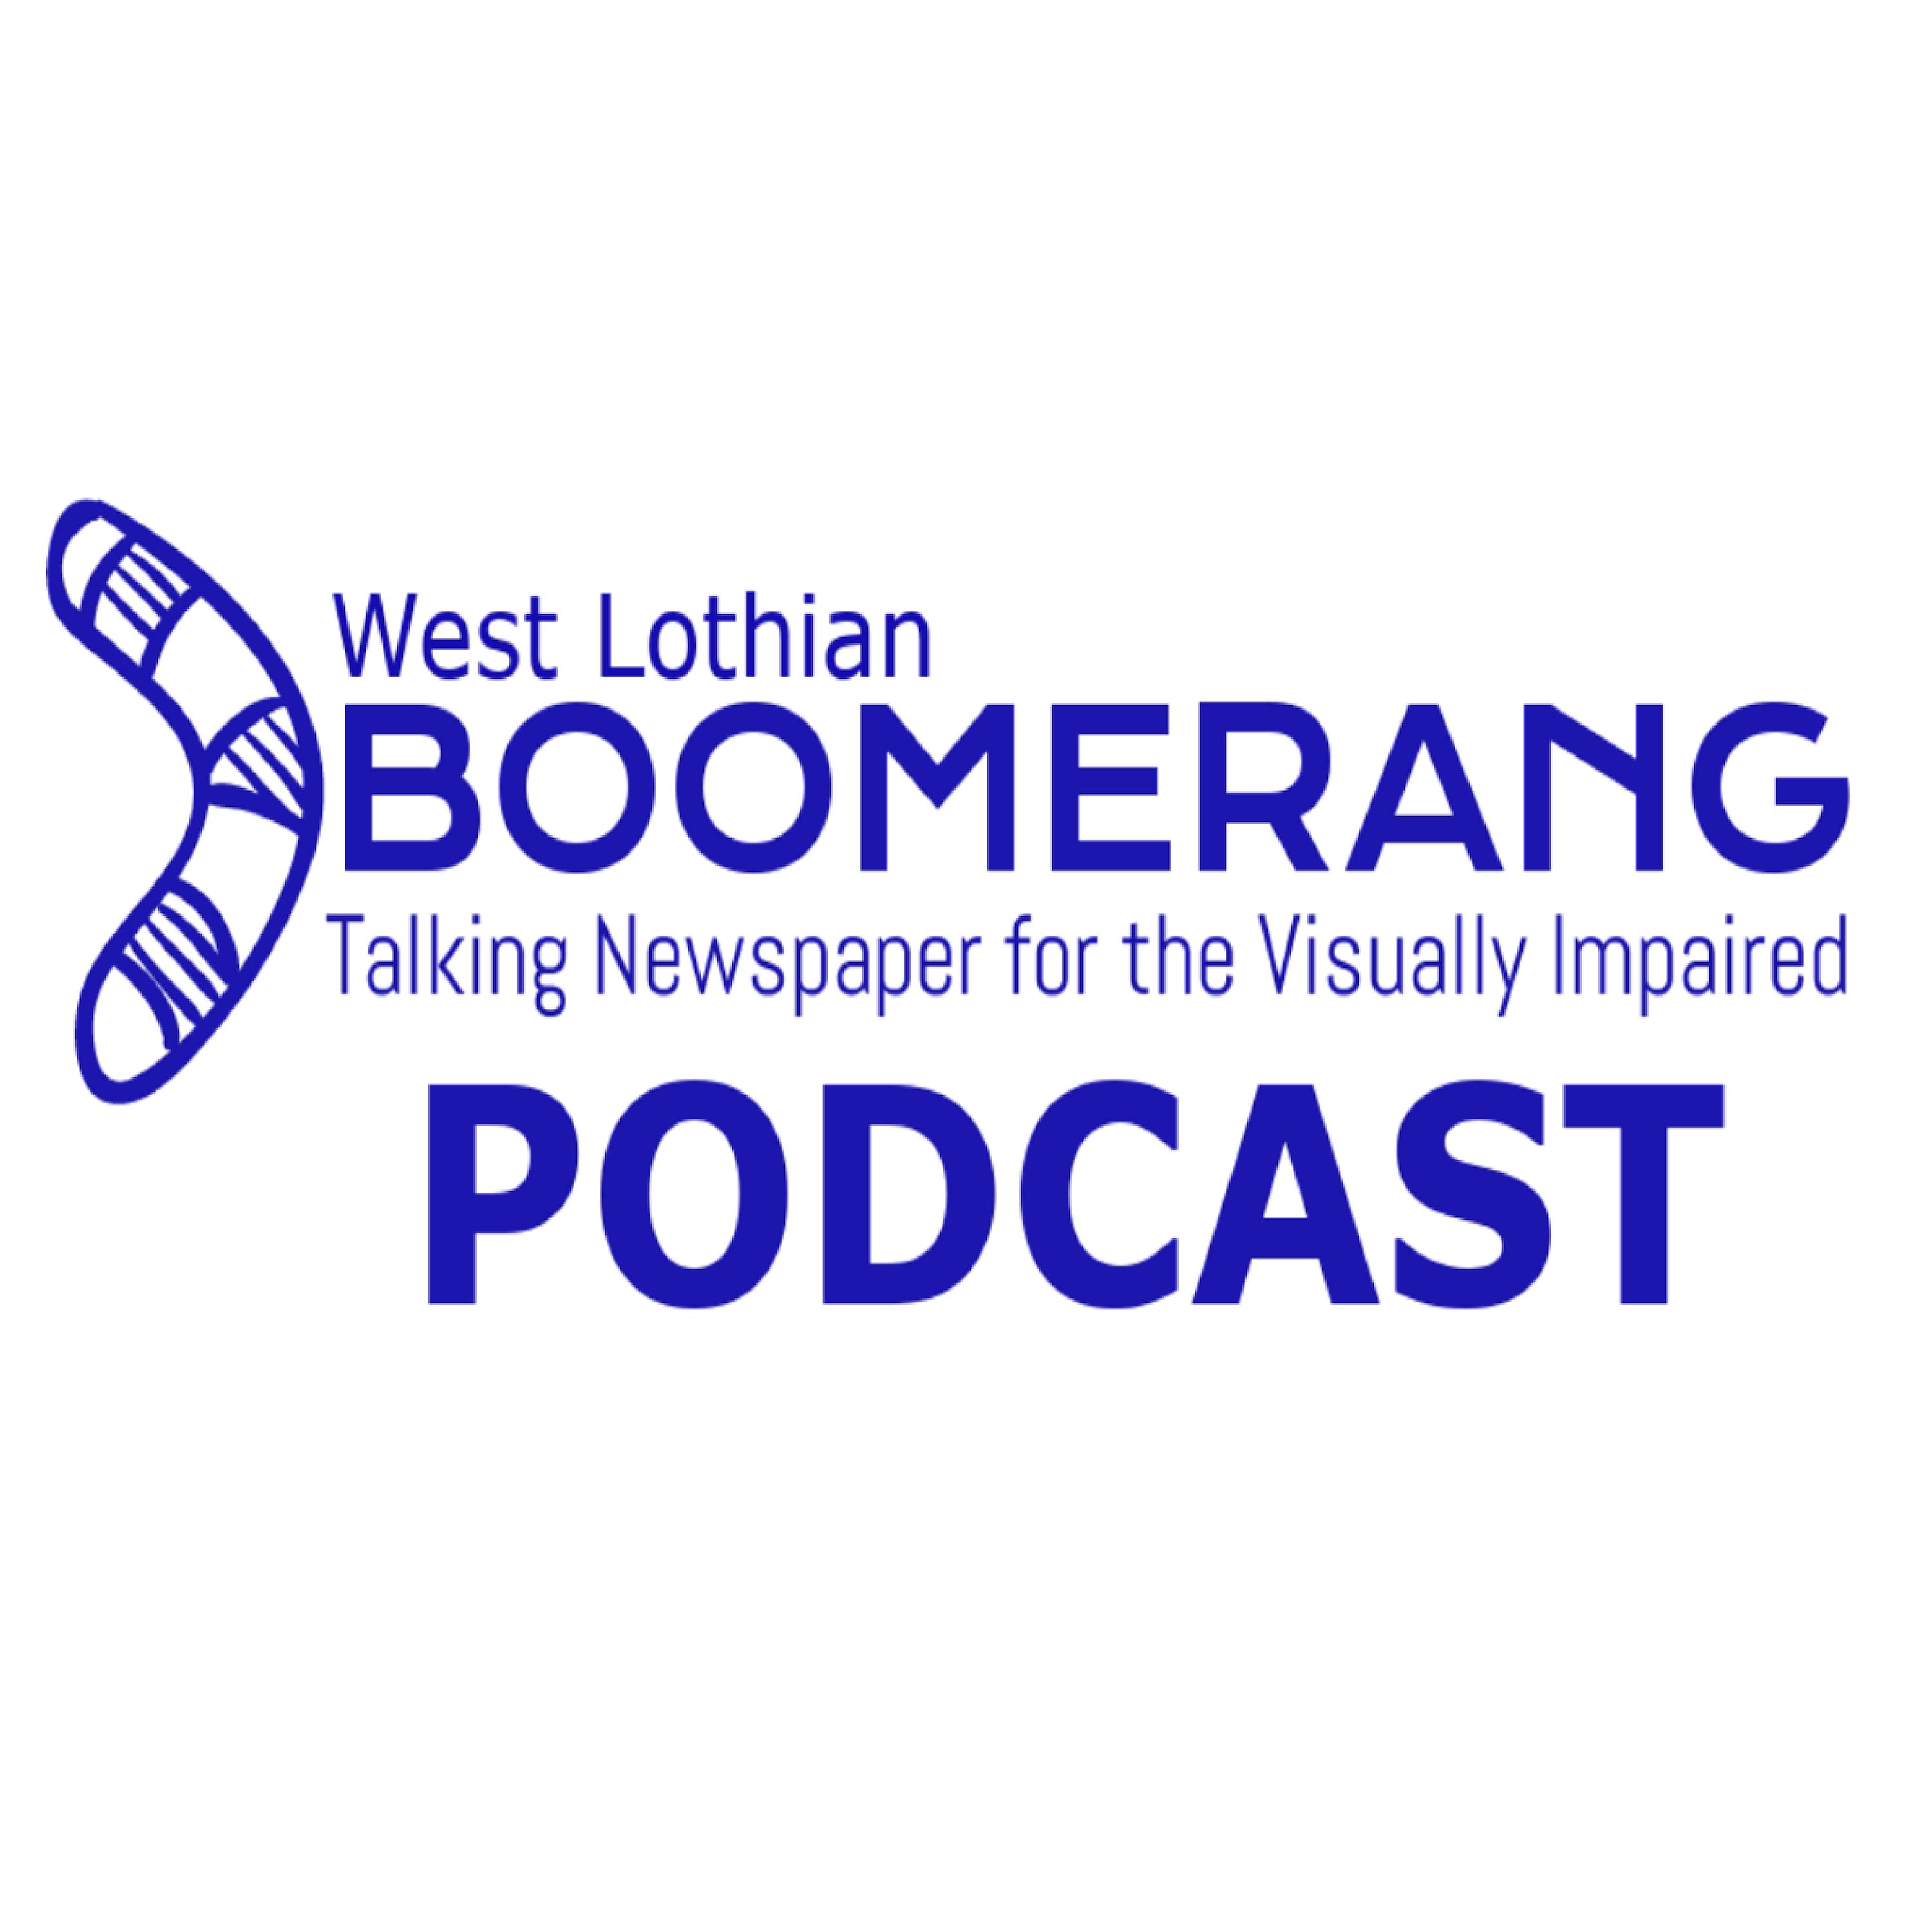 WLB Podcast Logo 3kx3k px on White BG – WL Boomerang